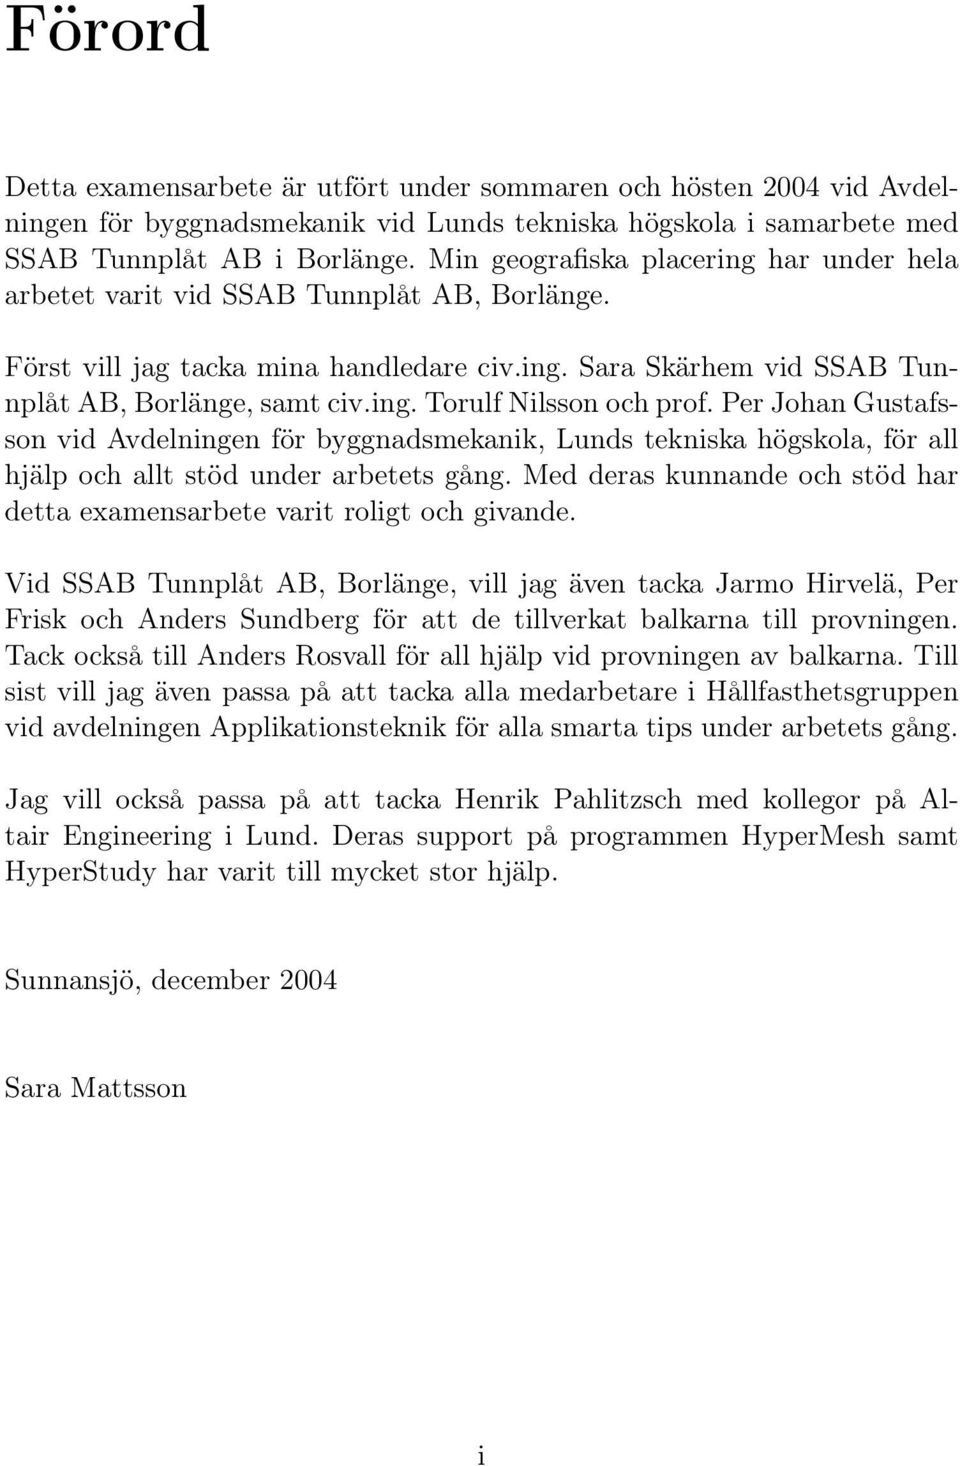 Per Johan Gustafsson vid Avdelningen för byggnadsmekanik, Lunds tekniska högskola, för all hjälp och allt stöd under arbetets gång.